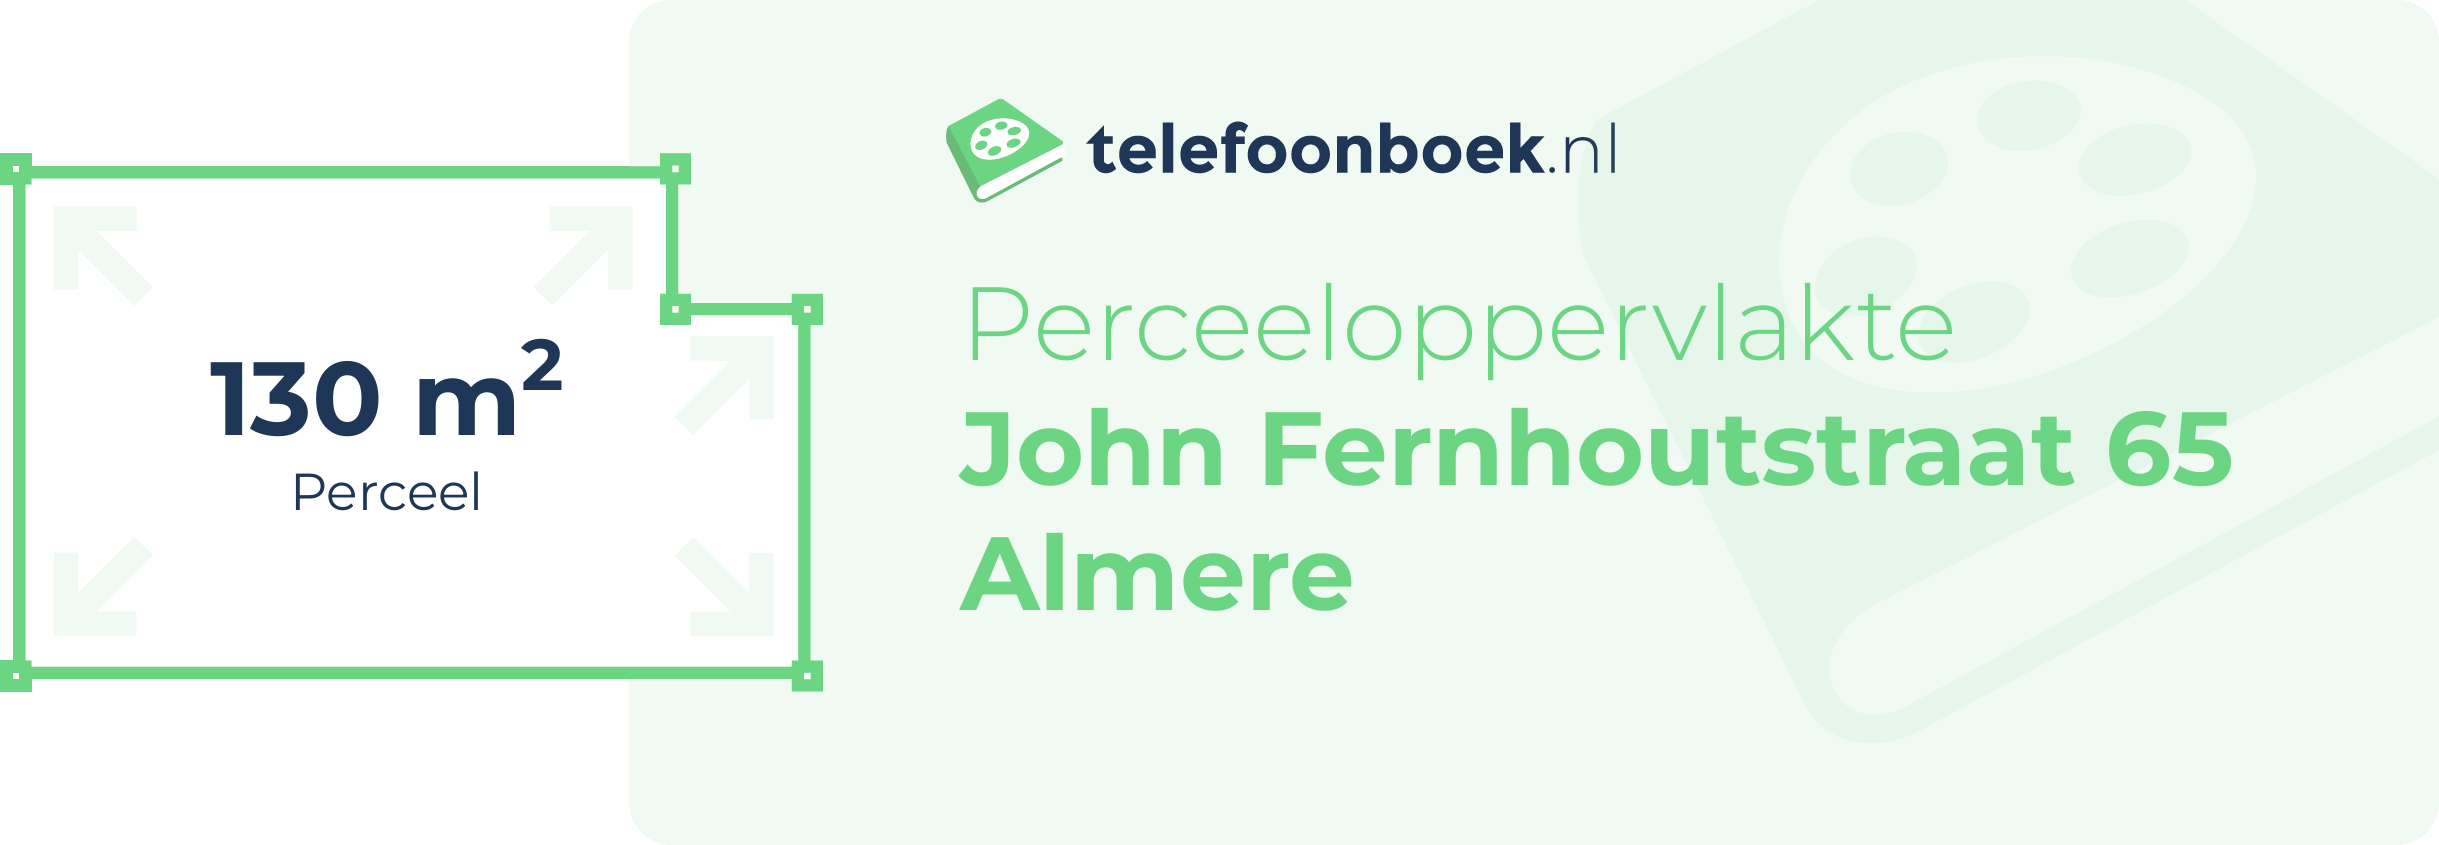 Perceeloppervlakte John Fernhoutstraat 65 Almere